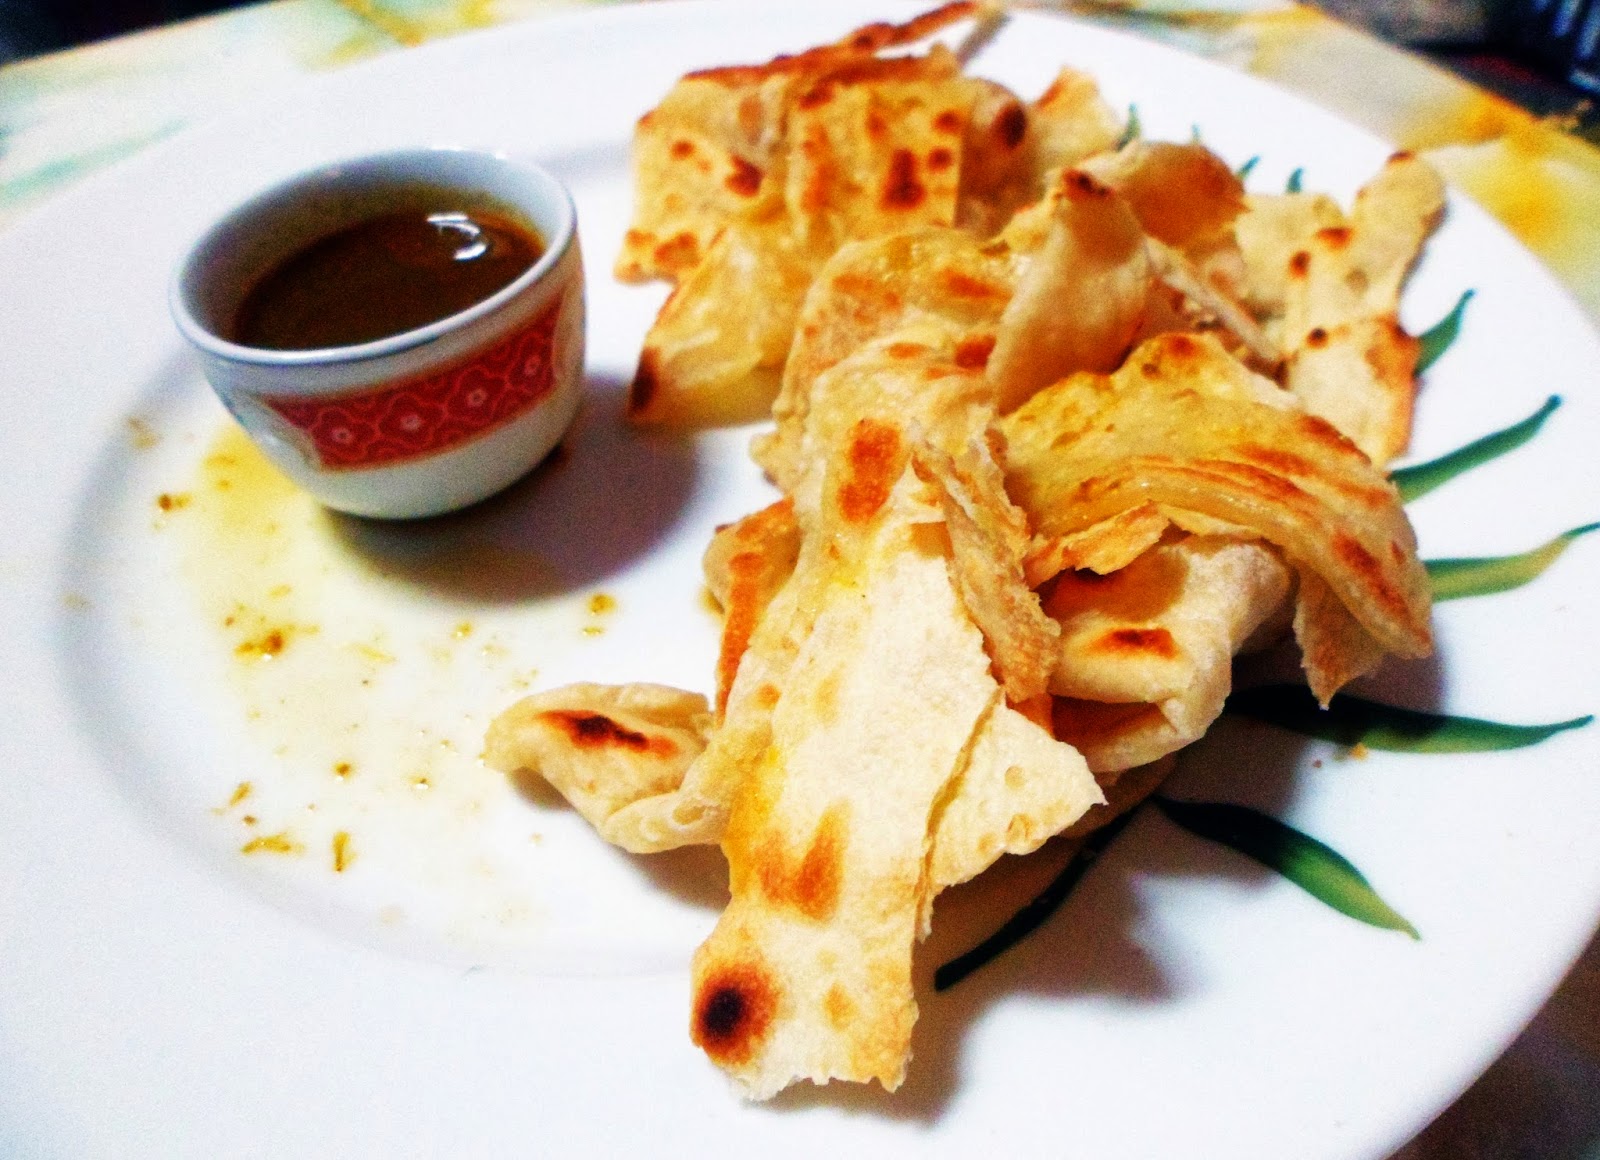 roti_prata_canai_thai_cuisine_thailand_foodies_food_photography_india_indie_indonesia_recipe_blogger